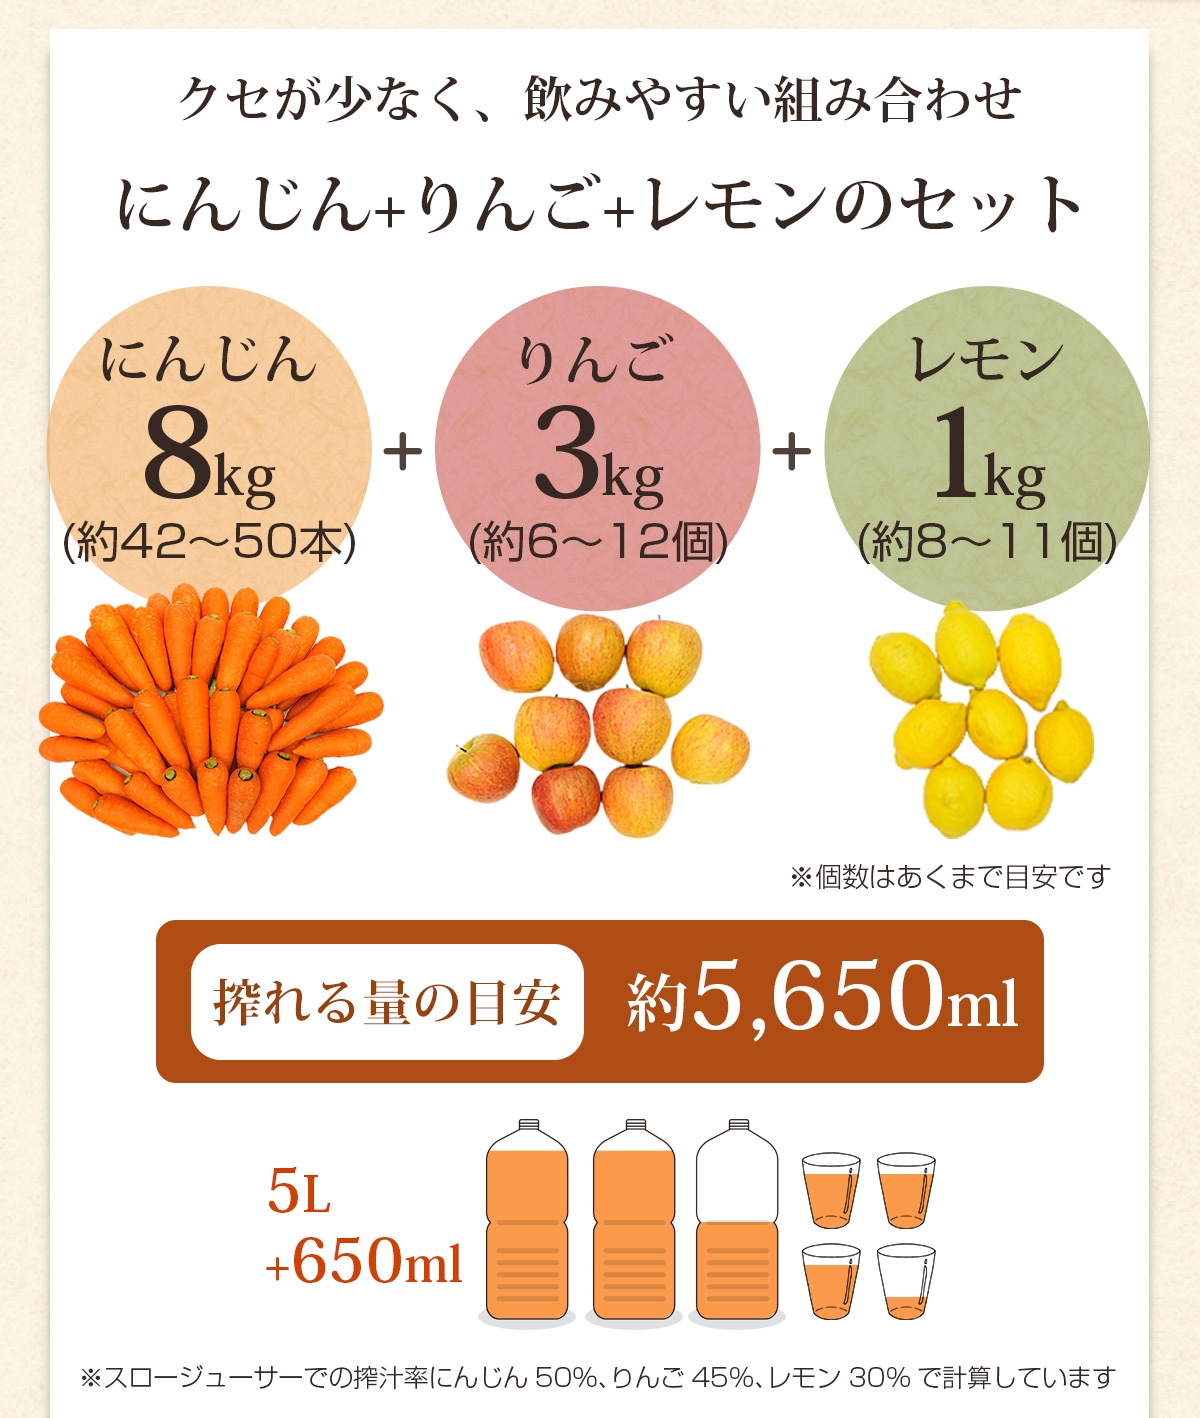 人参8kg＋りんご3kg＋レモン1kgで搾れる量の目安は約5,650ml